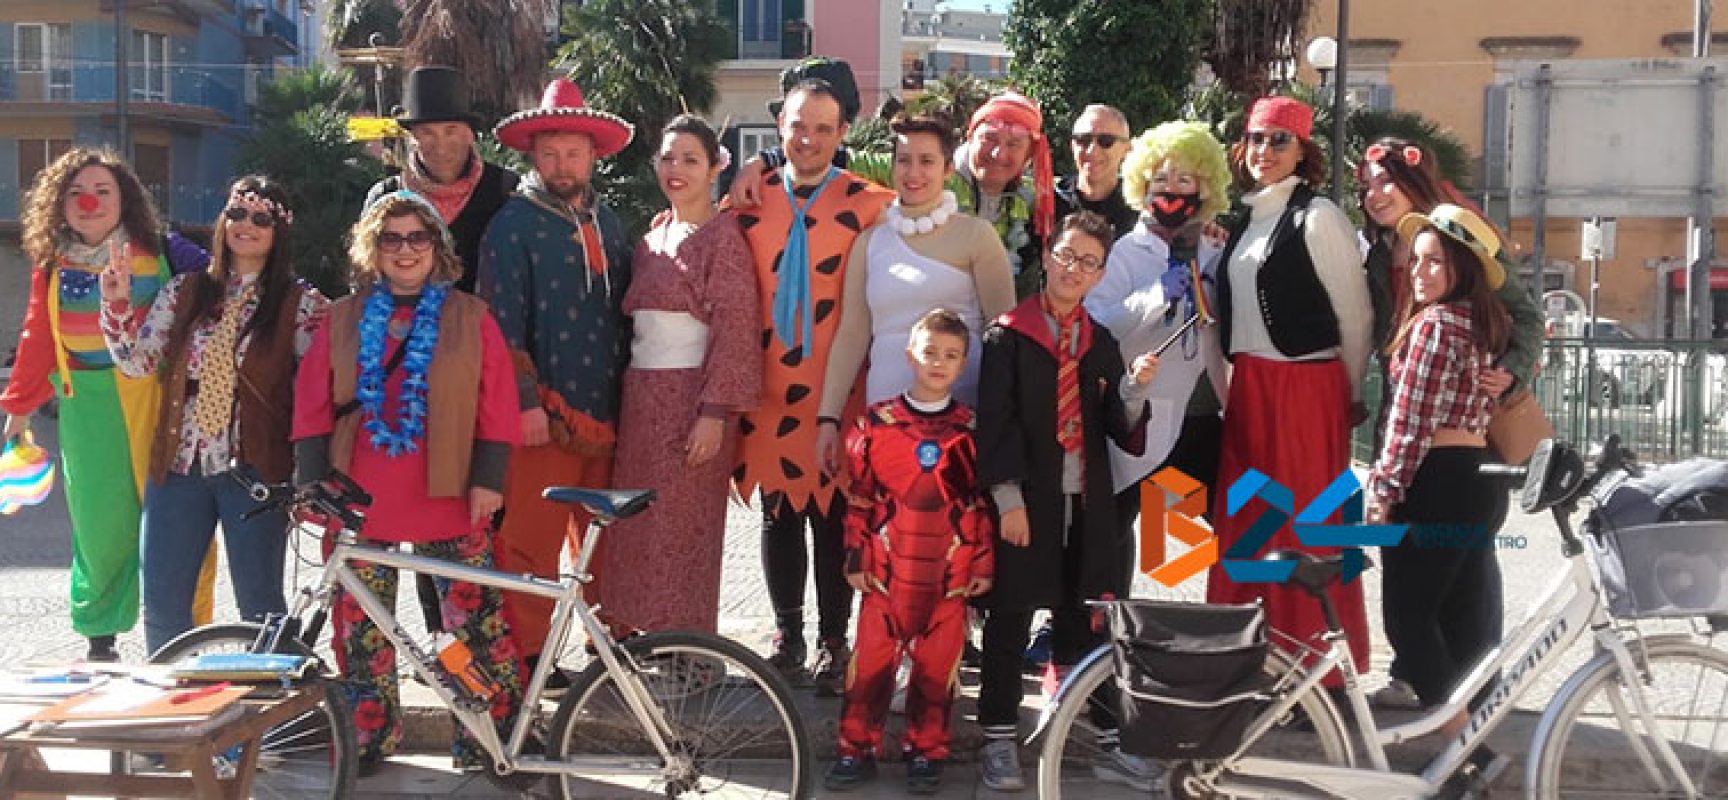 Colori e tradizioni in sella per la biciclettata in maschera a Bisceglie / FOTO